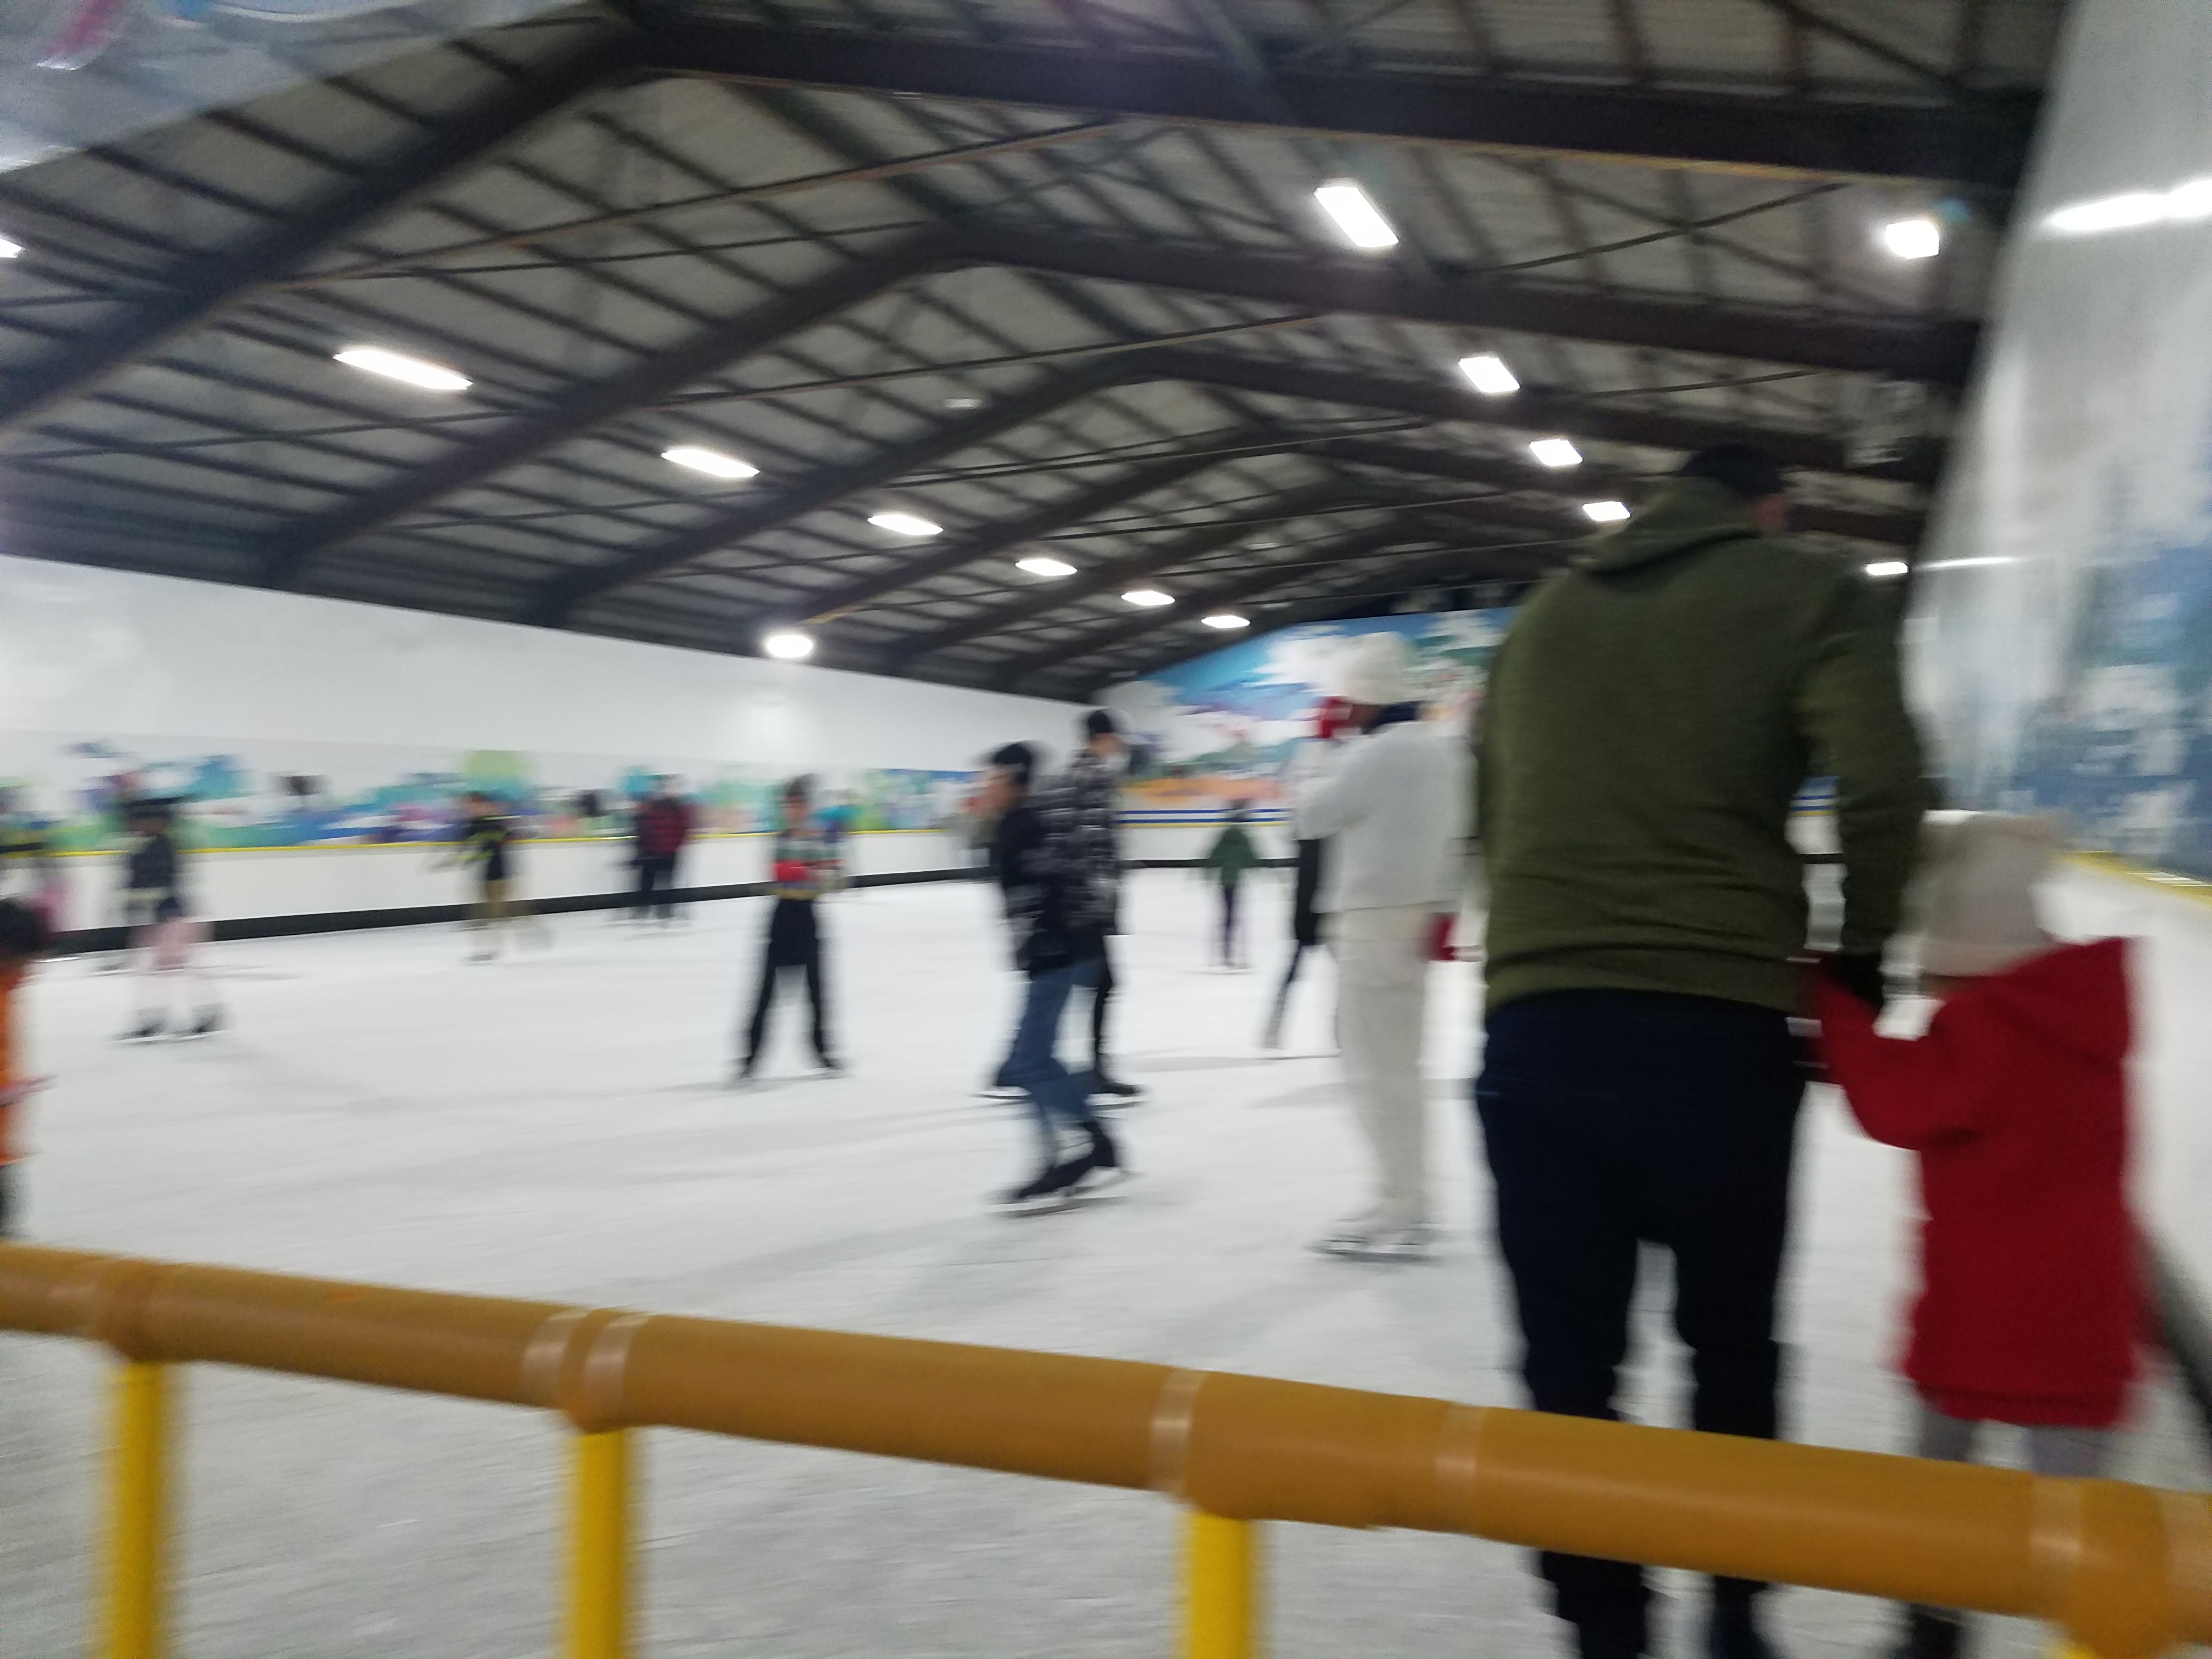 宇都宮 スケート センター